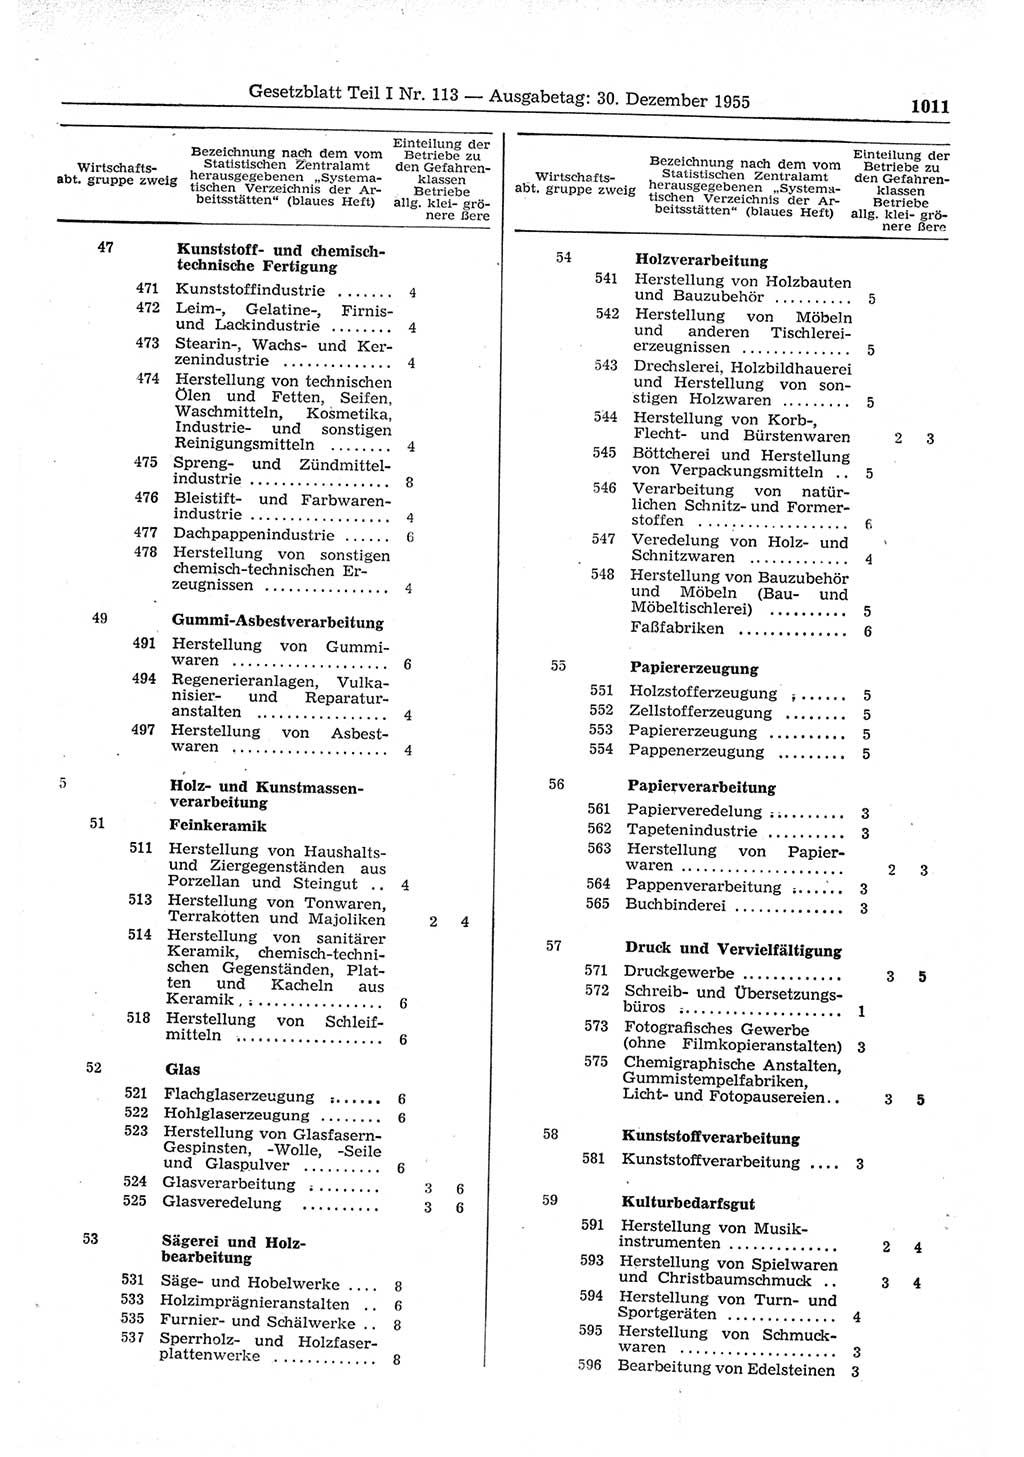 Gesetzblatt (GBl.) der Deutschen Demokratischen Republik (DDR) Teil Ⅰ 1955, Seite 1011 (GBl. DDR Ⅰ 1955, S. 1011)